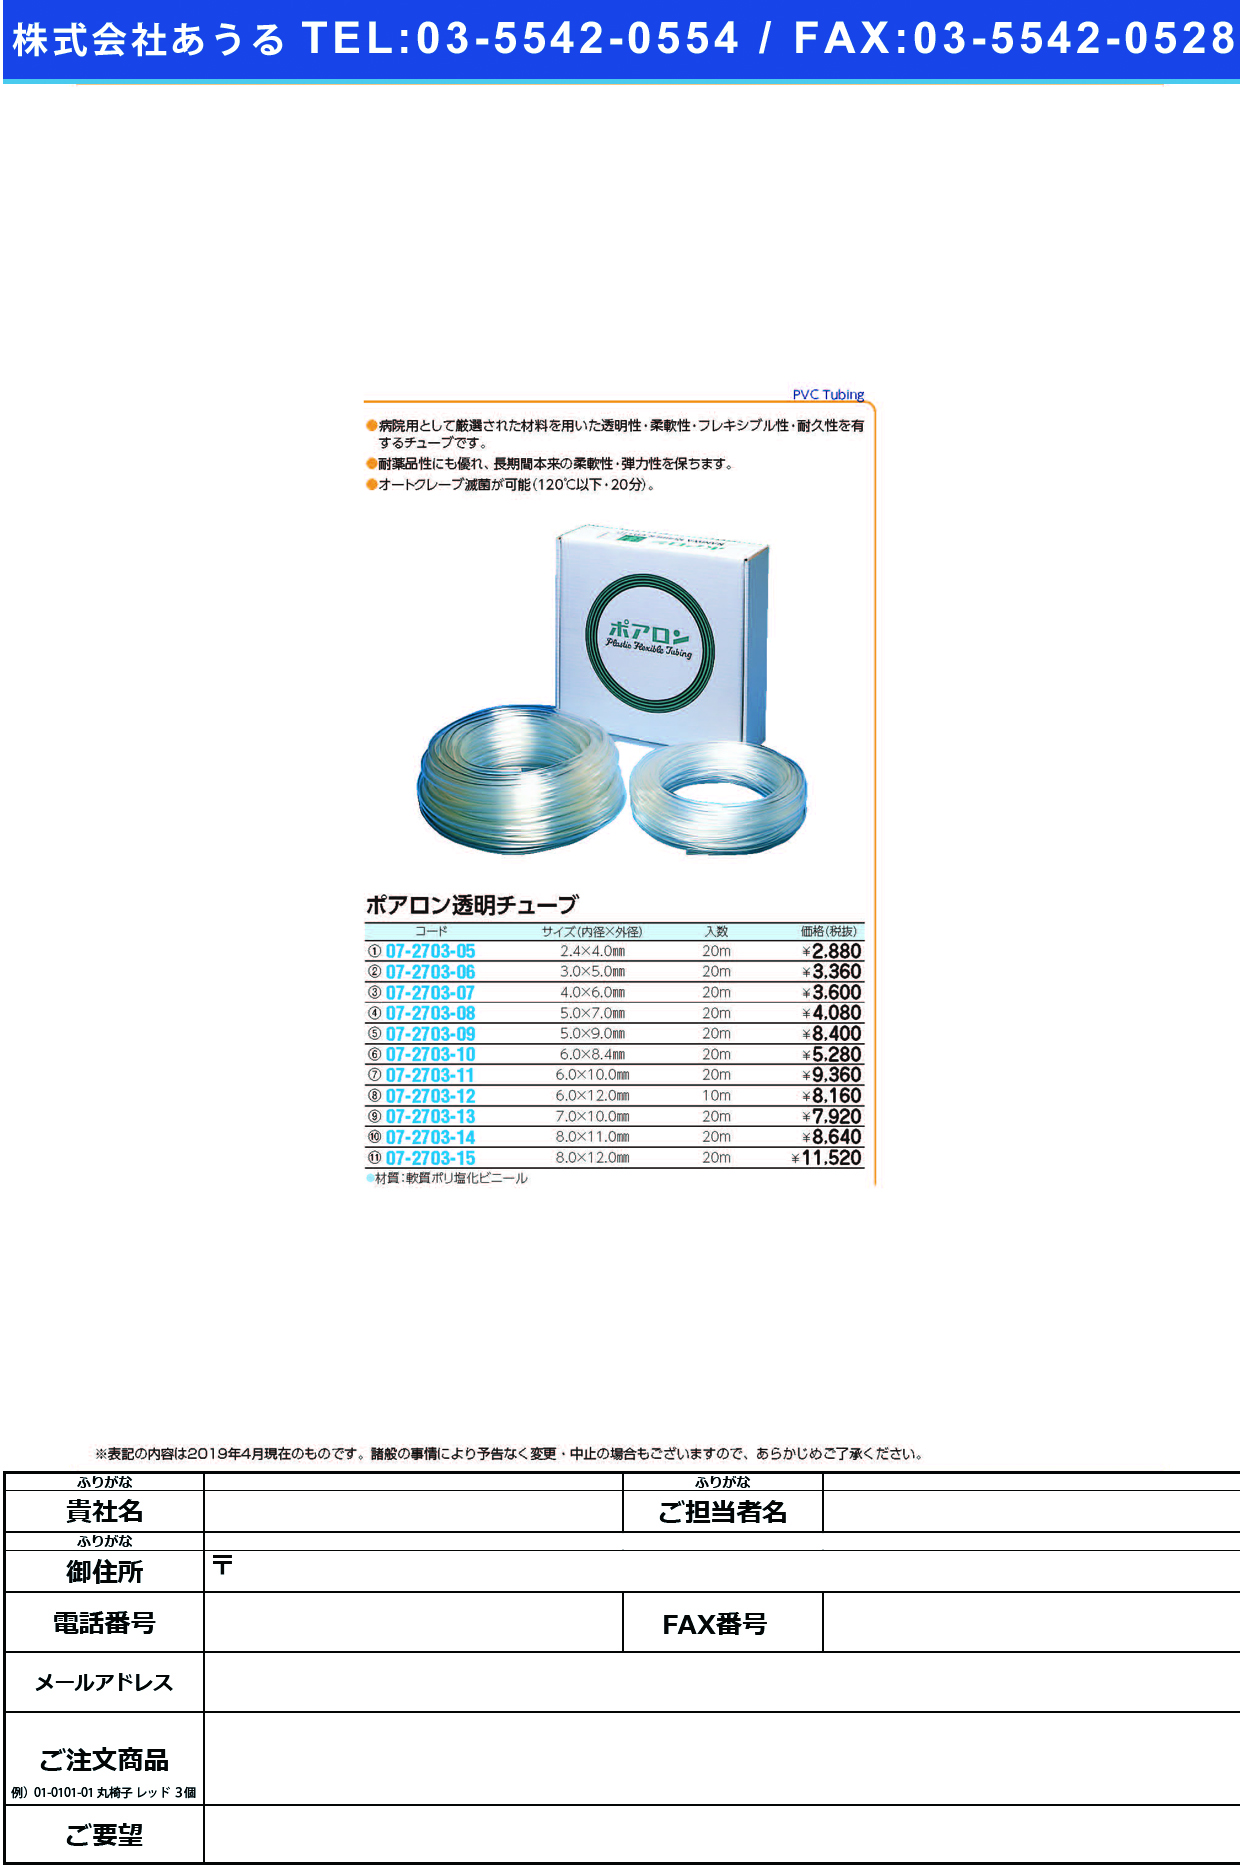 (07-2703-09)ポアロン透明チューブ 5X9MM(20Mｲﾘ) ﾎﾟｱﾛﾝﾄｳﾒｲﾁｭｰﾌﾞ【1箱単位】【2019年カタログ商品】